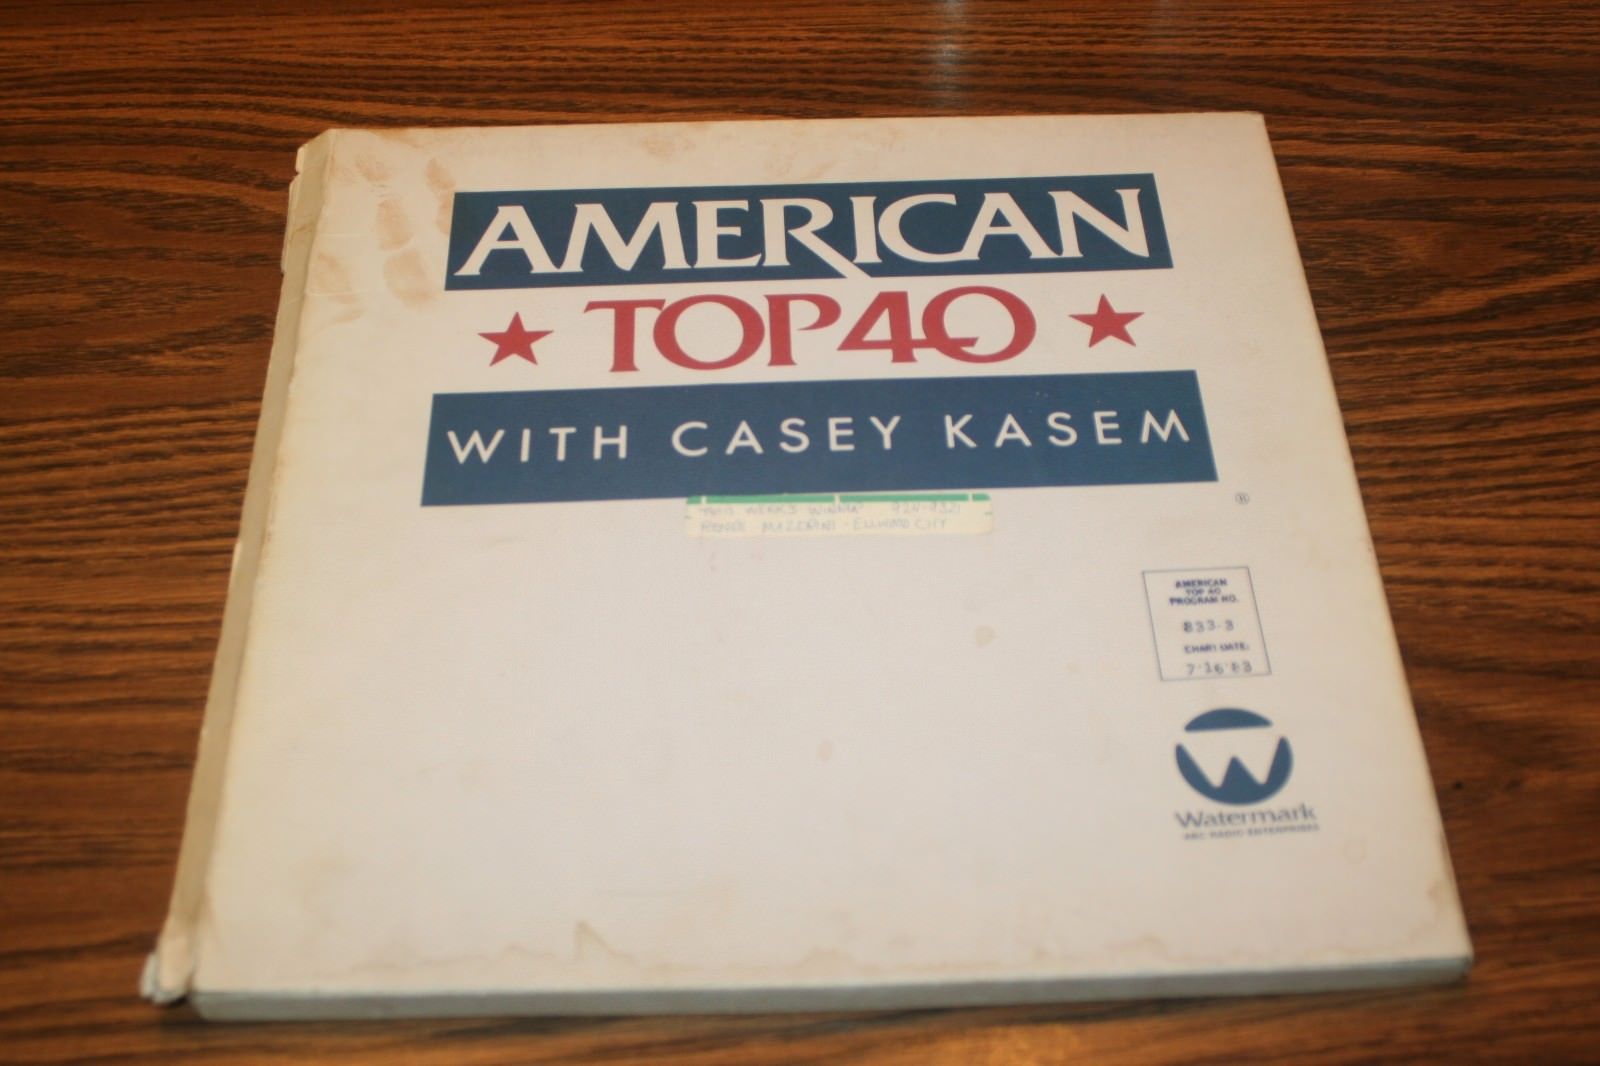 Korean Pinpoint Postbud popsike.com - AMERICAN TOP 40 CASEY KASEM 7-16-83 4 LP vinyl records w/cue  sheet RARE - auction details